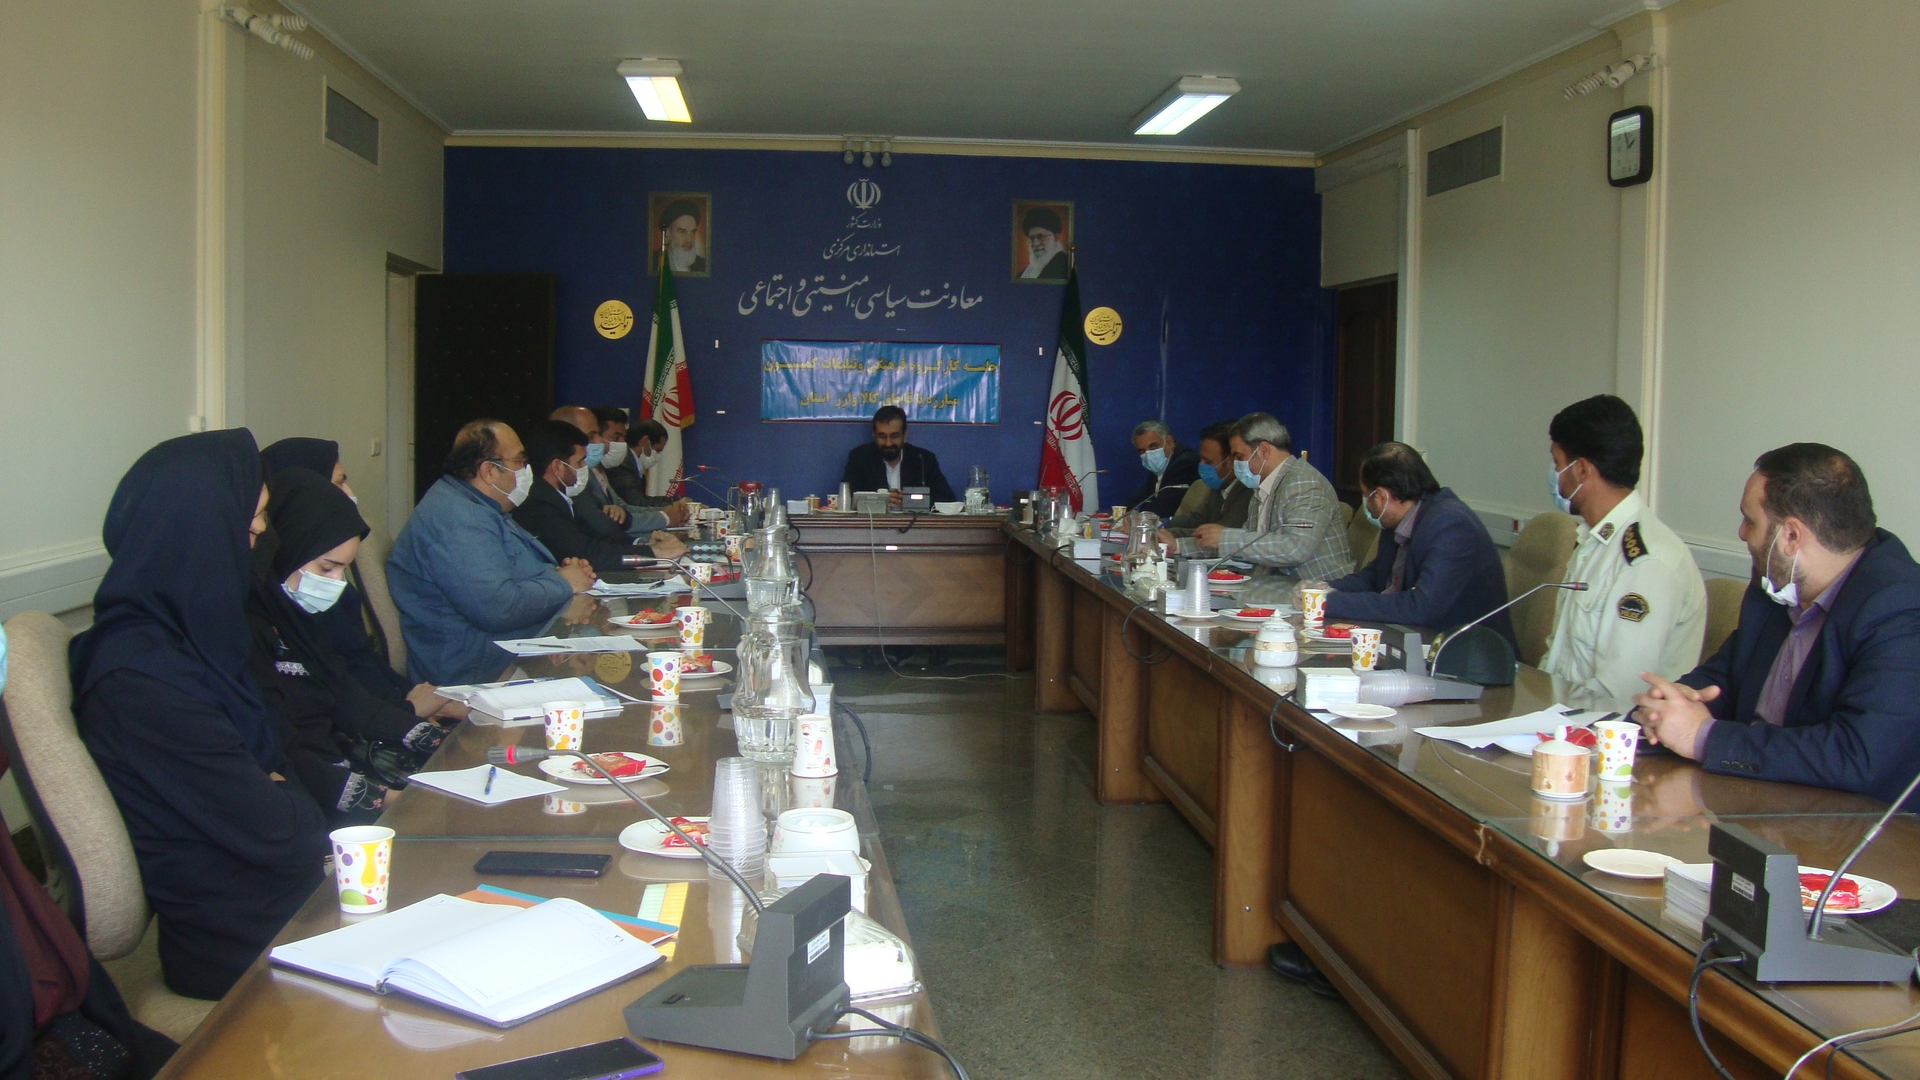 جلسه کارگروه فرهنگی و تبلیغات کمیسیون مبارزه با قاچاق کالا و ارز  استان برگزار شد